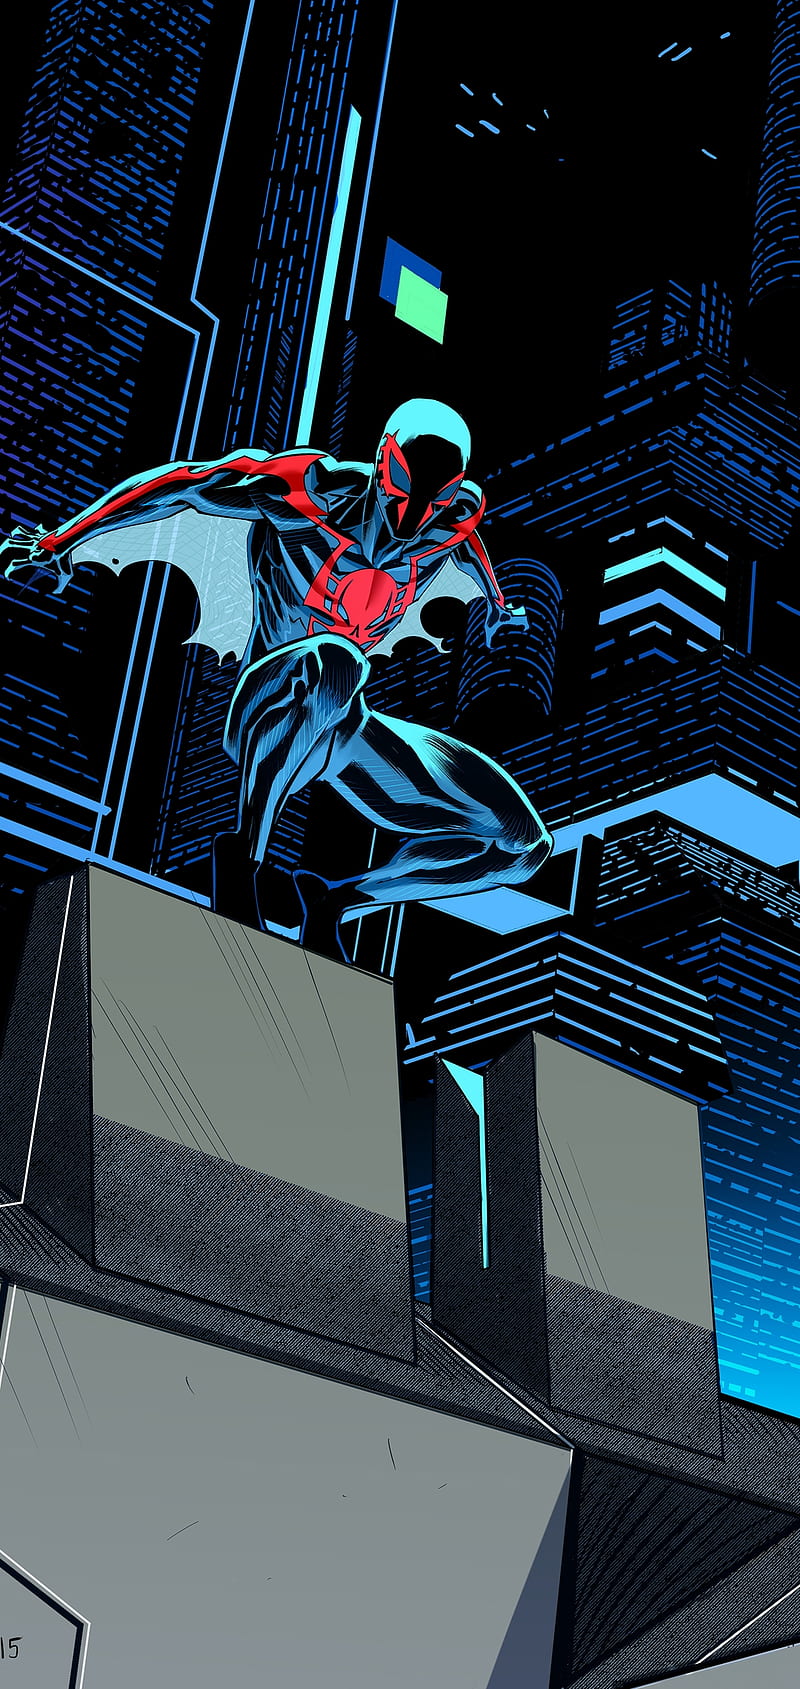 Spider-Man: Người nhện đã quay lại! Chúng ta hãy cùng đón xem siêu anh hùng phiêu lưu trong thế giới rộng lớn của Marvel. Tham gia vào cuộc chiến chống lại các tên tội phạm và cứu người với kỹ năng leo nhào tuyệt vời của Spider-Man. Hãy cùng xem để tận hưởng những giây phút giải trí đầy hứng khởi của bộ phim này nhé!